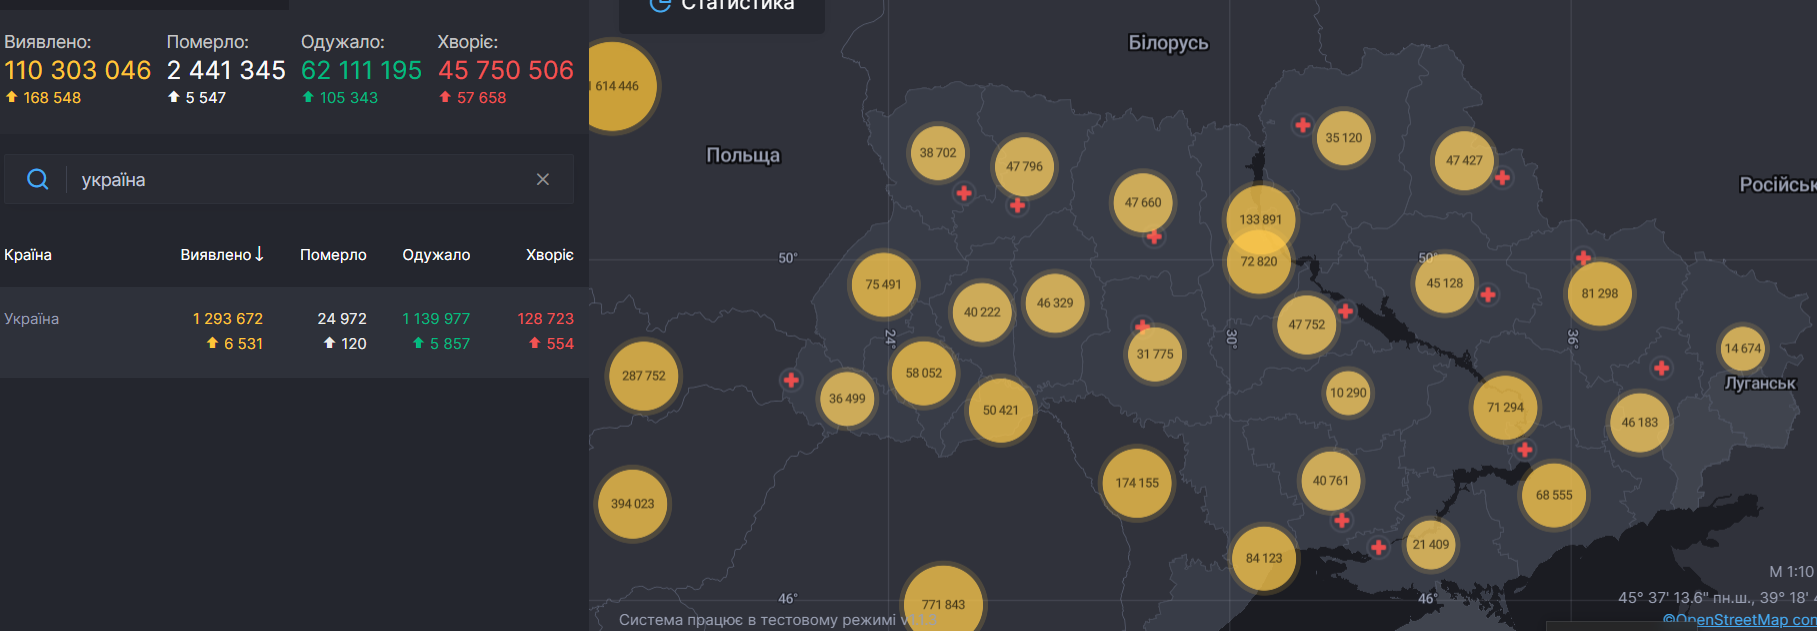 В Україні росте кількість хворих на коронавірус